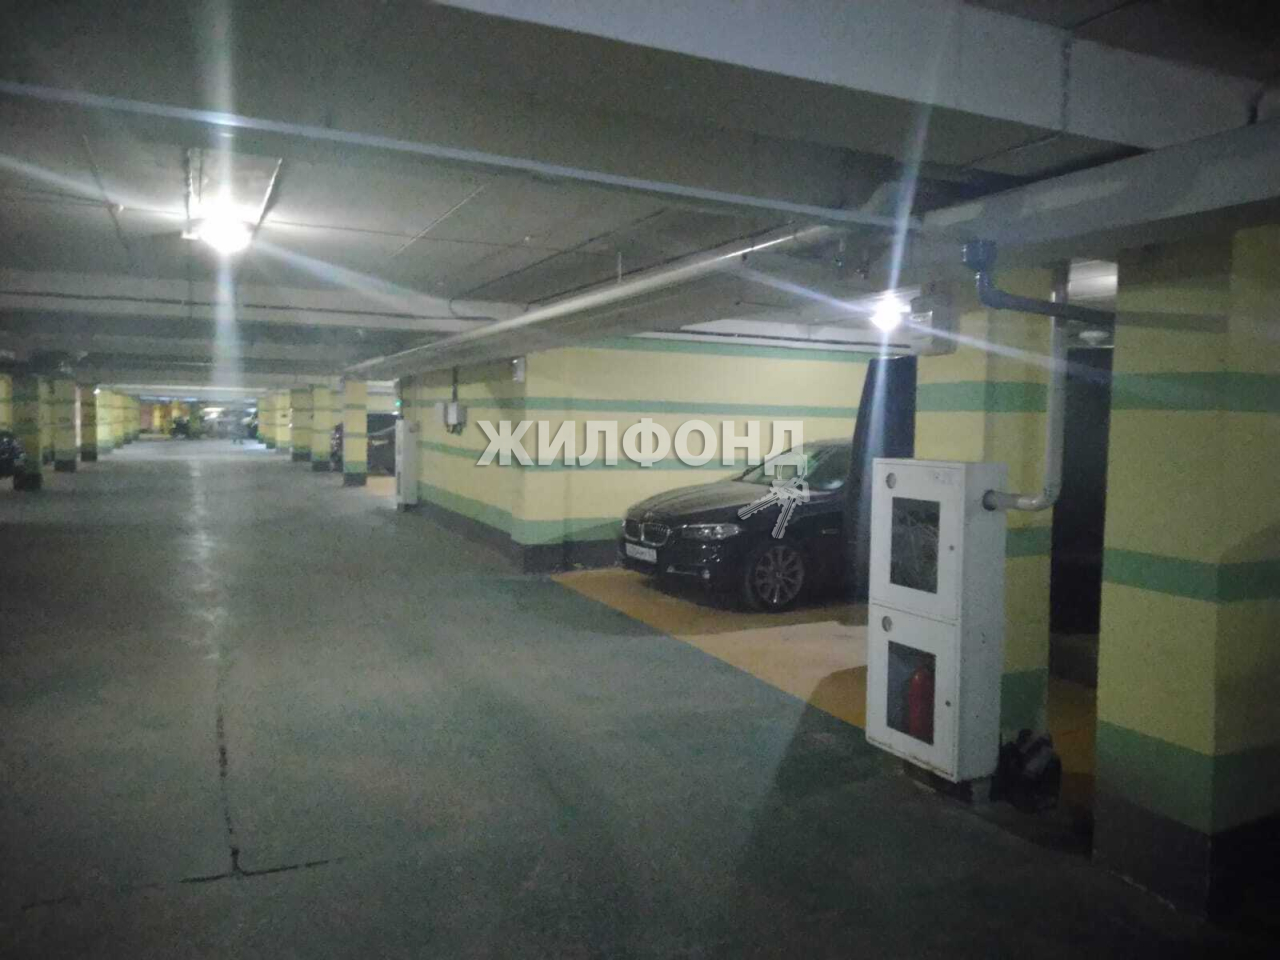 Орджоникидзе 47 Новосибирск купить парковку. Фото парковки Орджоникидзе 47 Новосибирск. Парковка орджоникидзе